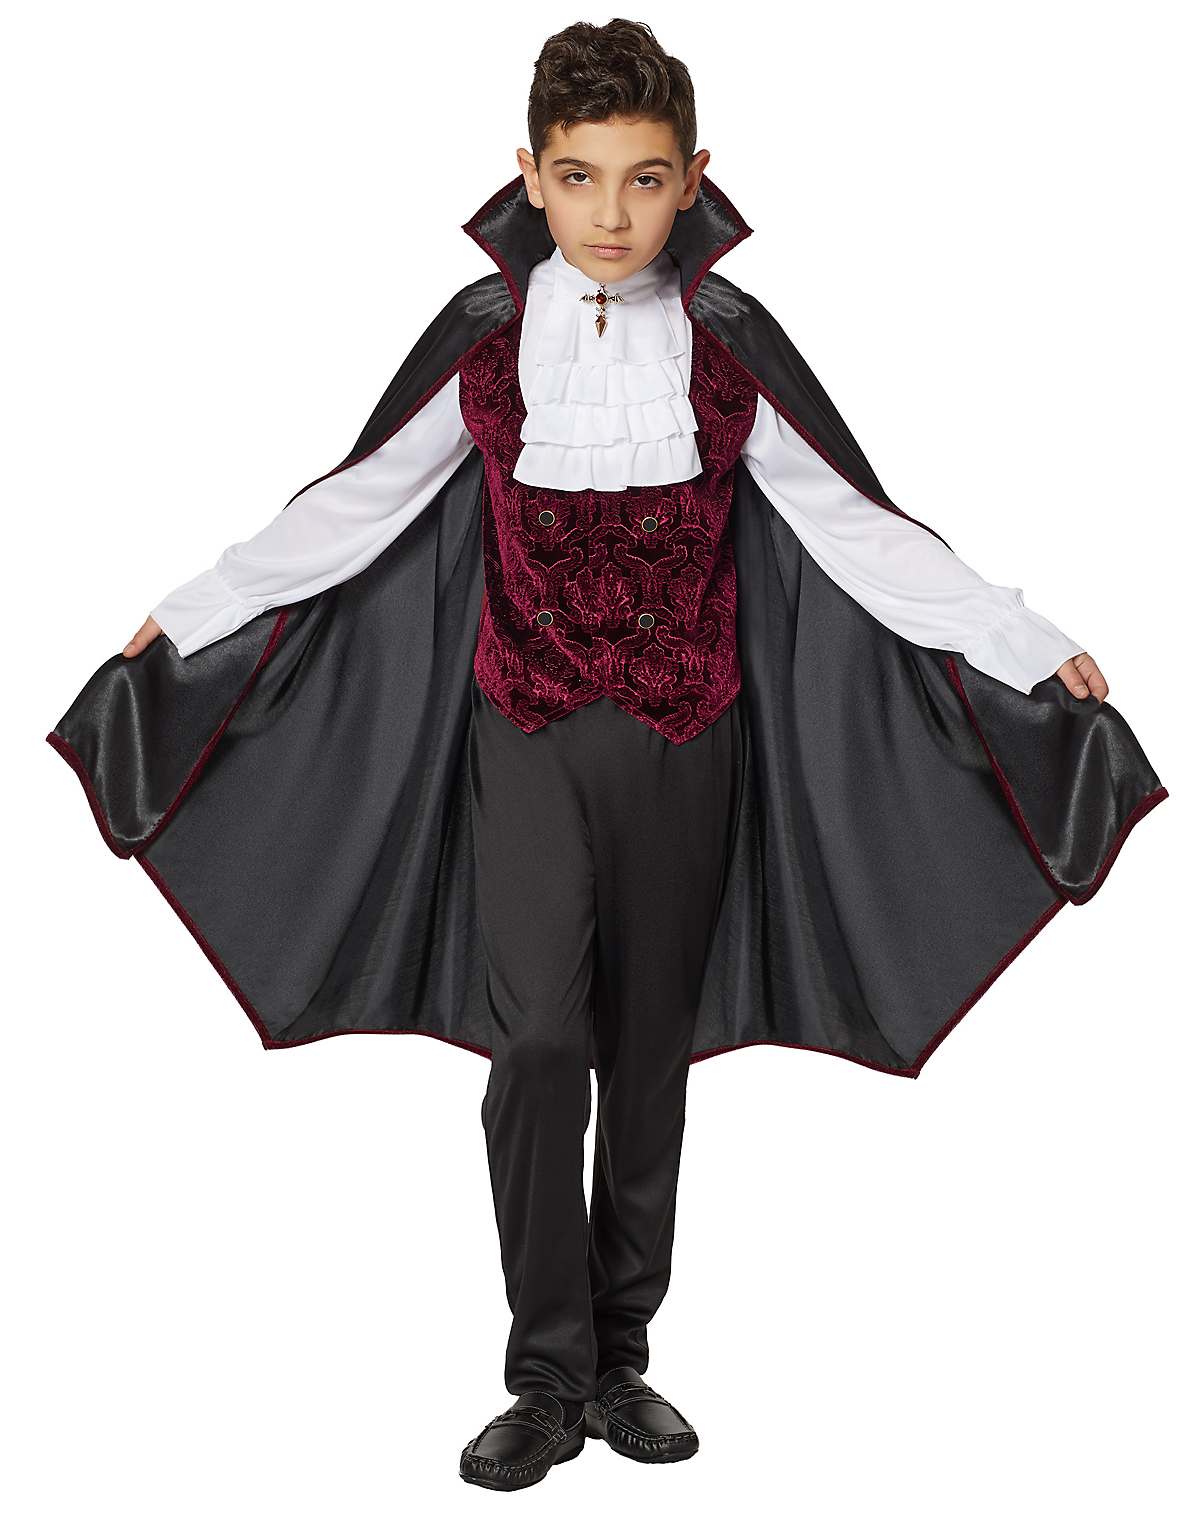 Kids Vampire Costume - Deluxe